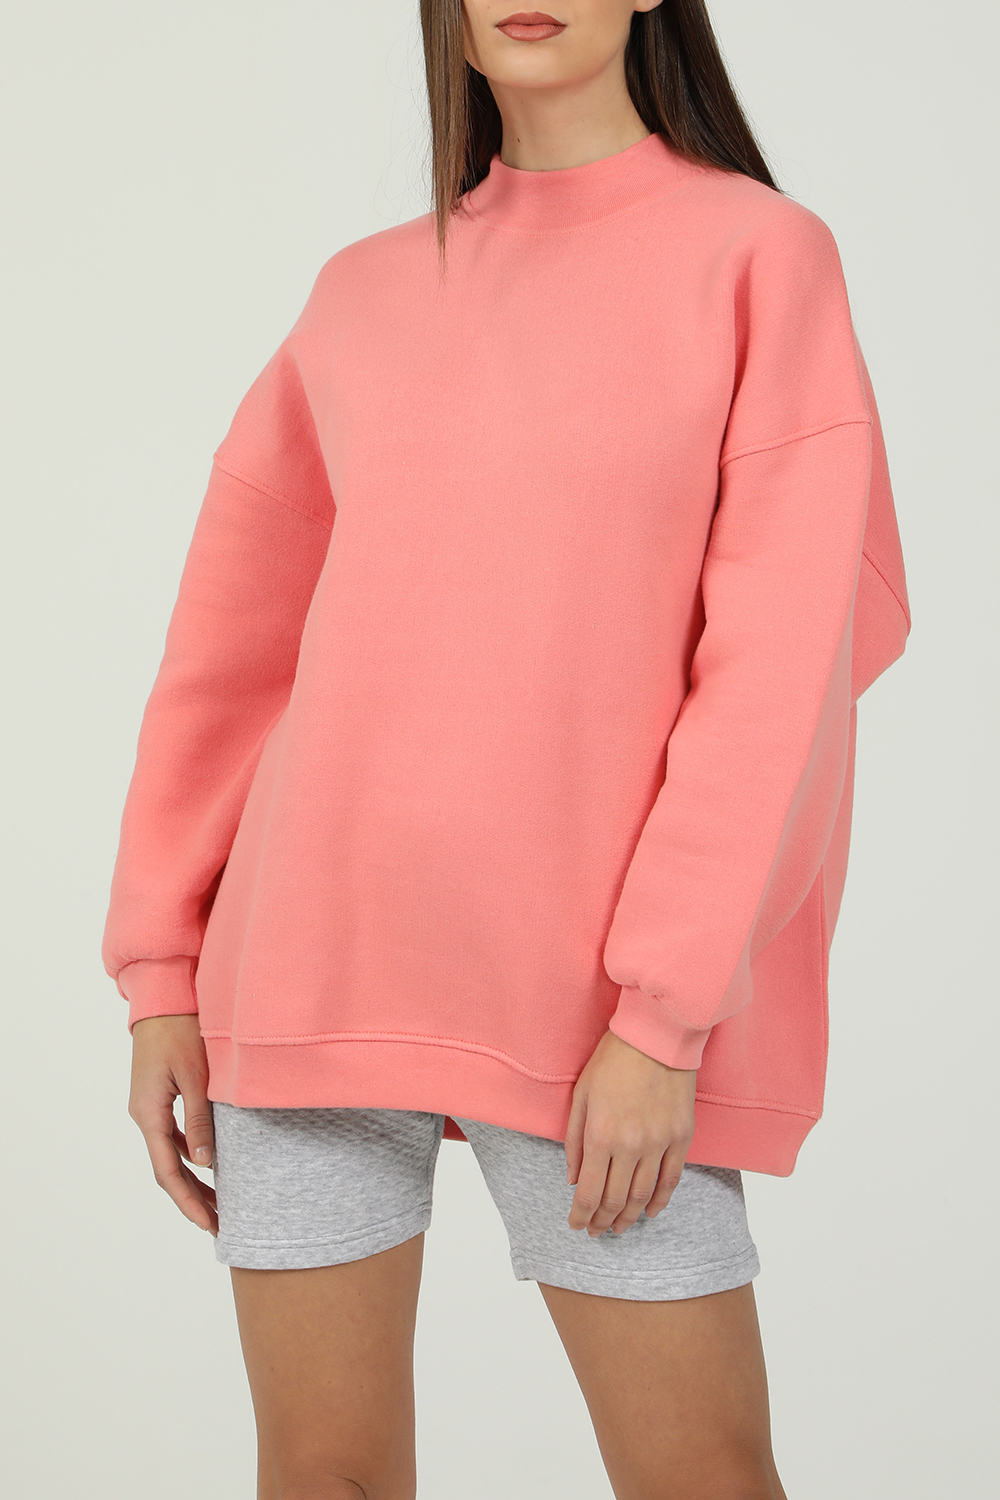 Γυναικεία/Ρούχα/Φούτερ/Μπλούζες AMERICAN VINTAGE - Γυναικεία φούτερ μπλούζα AMERICAN VINTAGE ροζ